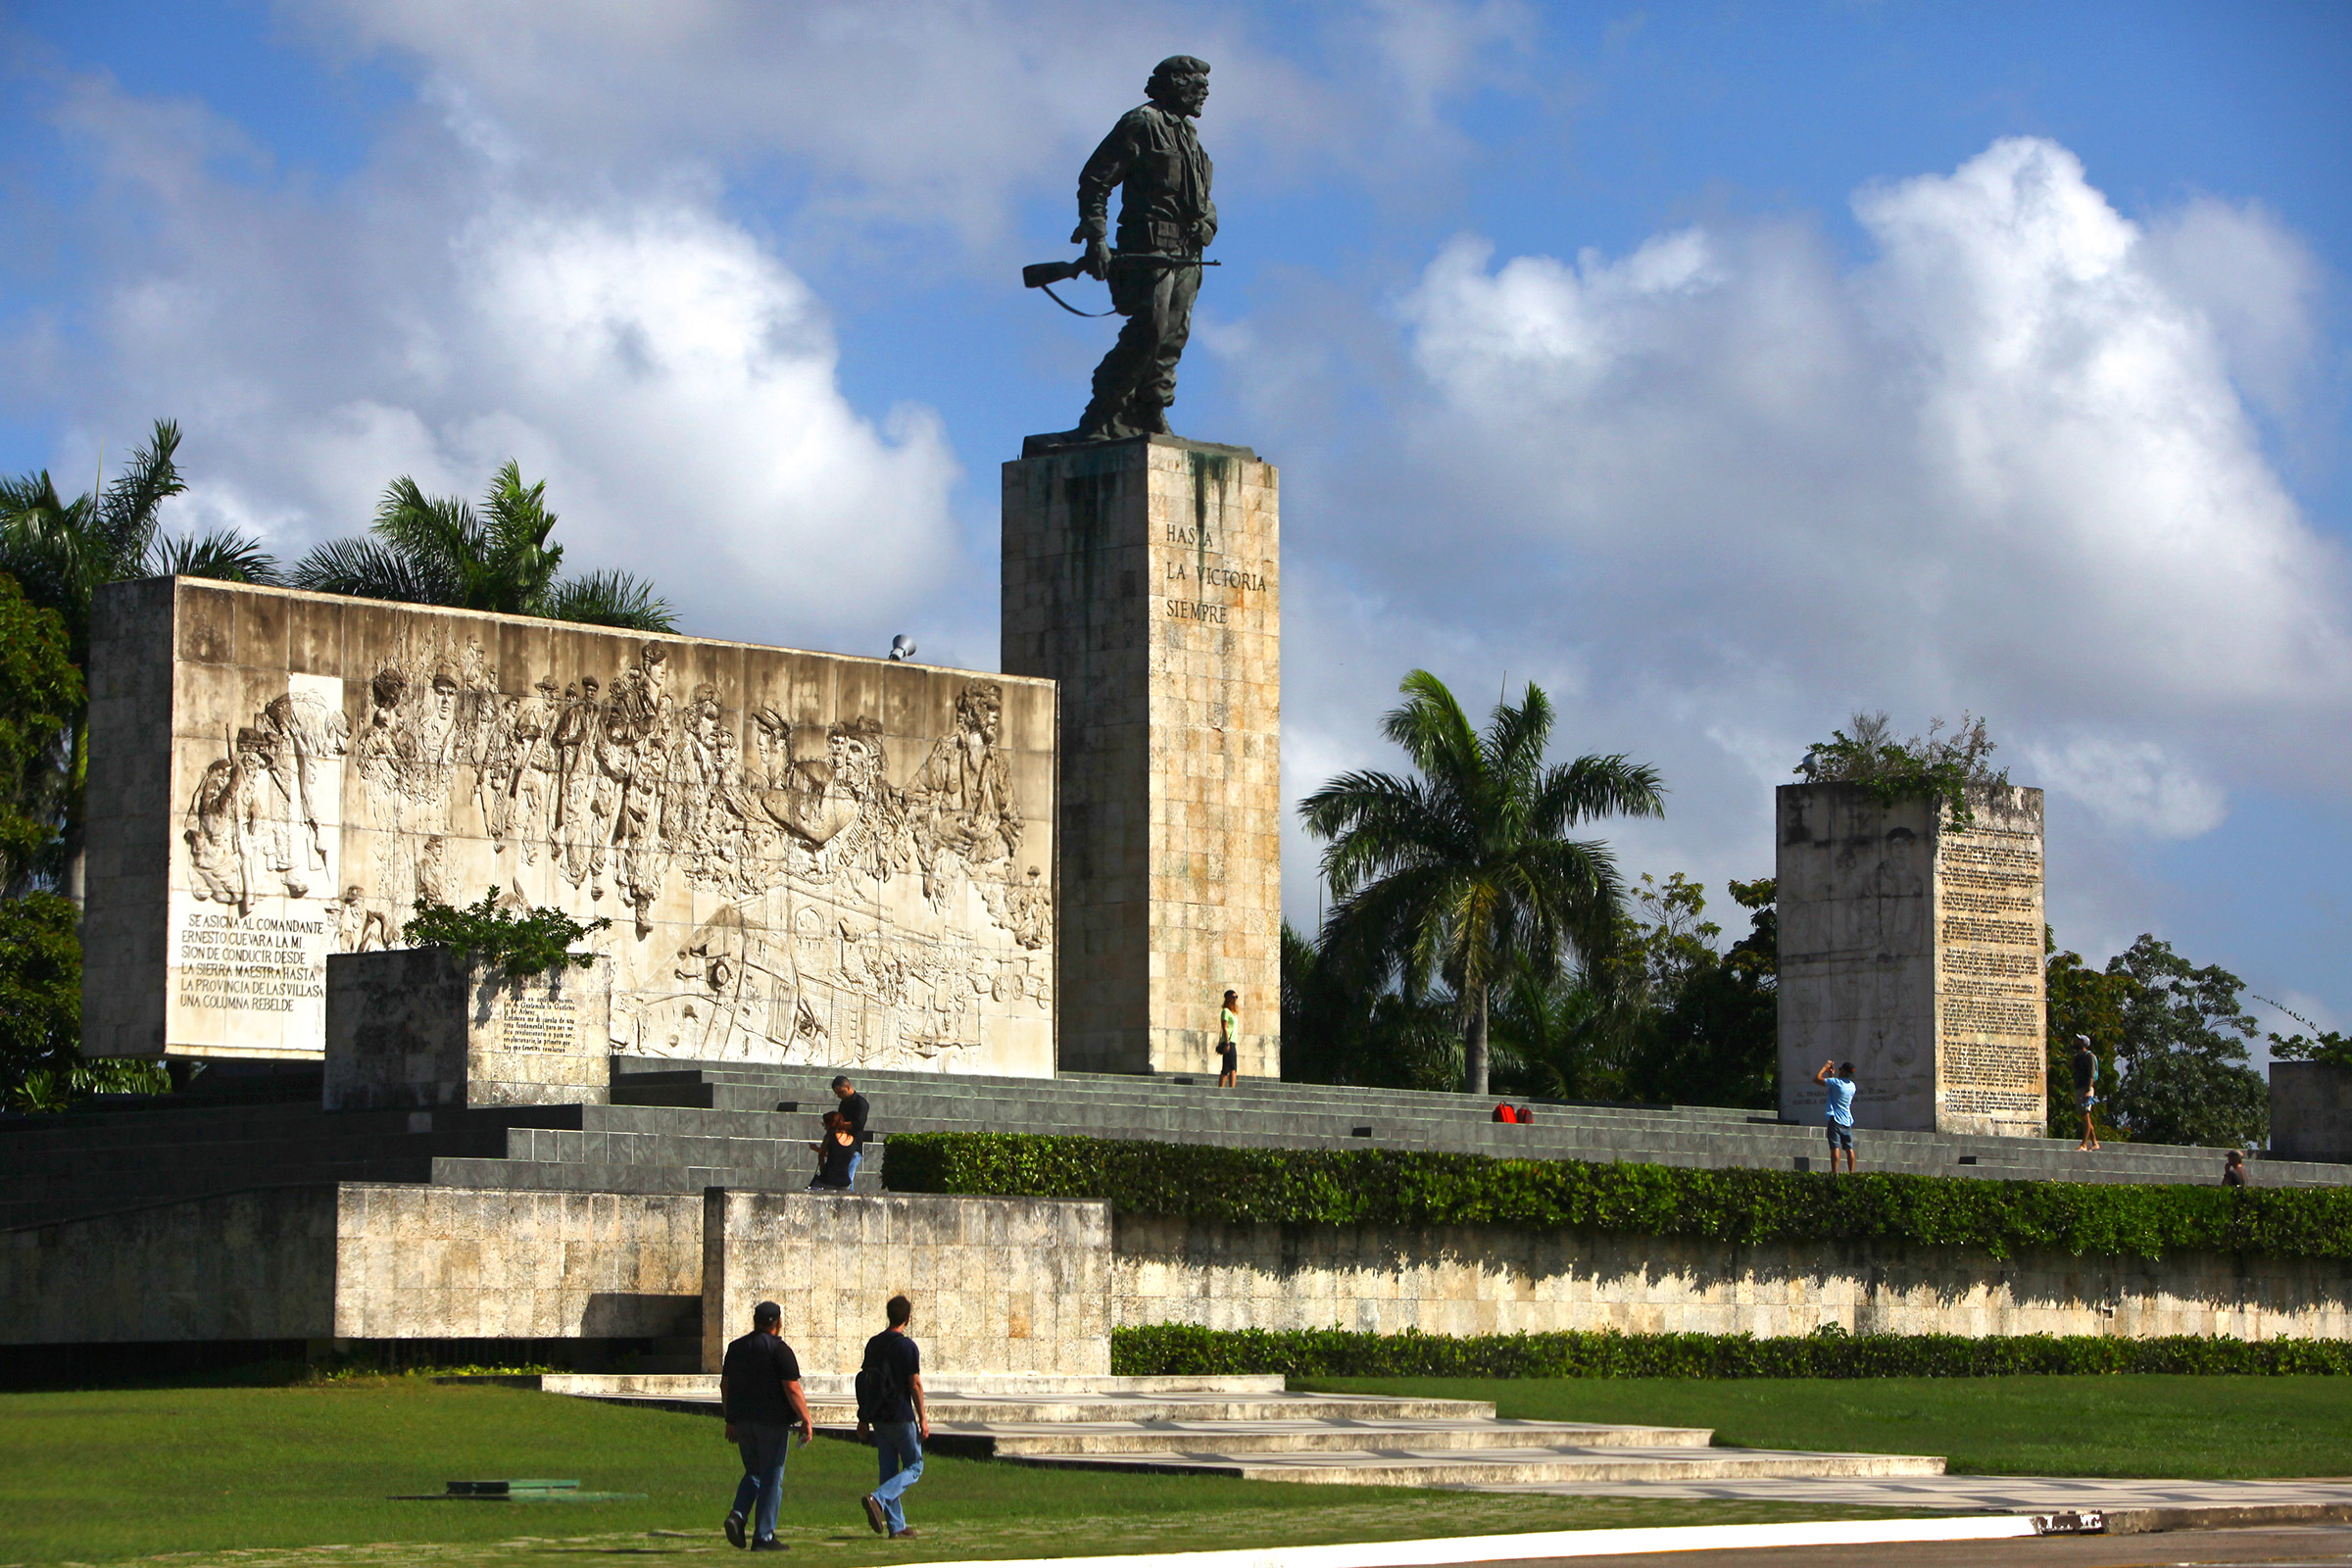 Останки лидера кубинской революции Эрнесто Че Гевары, расстрелянного в 1967 году в Боливии, были найдены спустя 30 лет и перезахоронены в октябре 1997 года в мемориальном комплексе в городе Санта-Клара на Кубе
